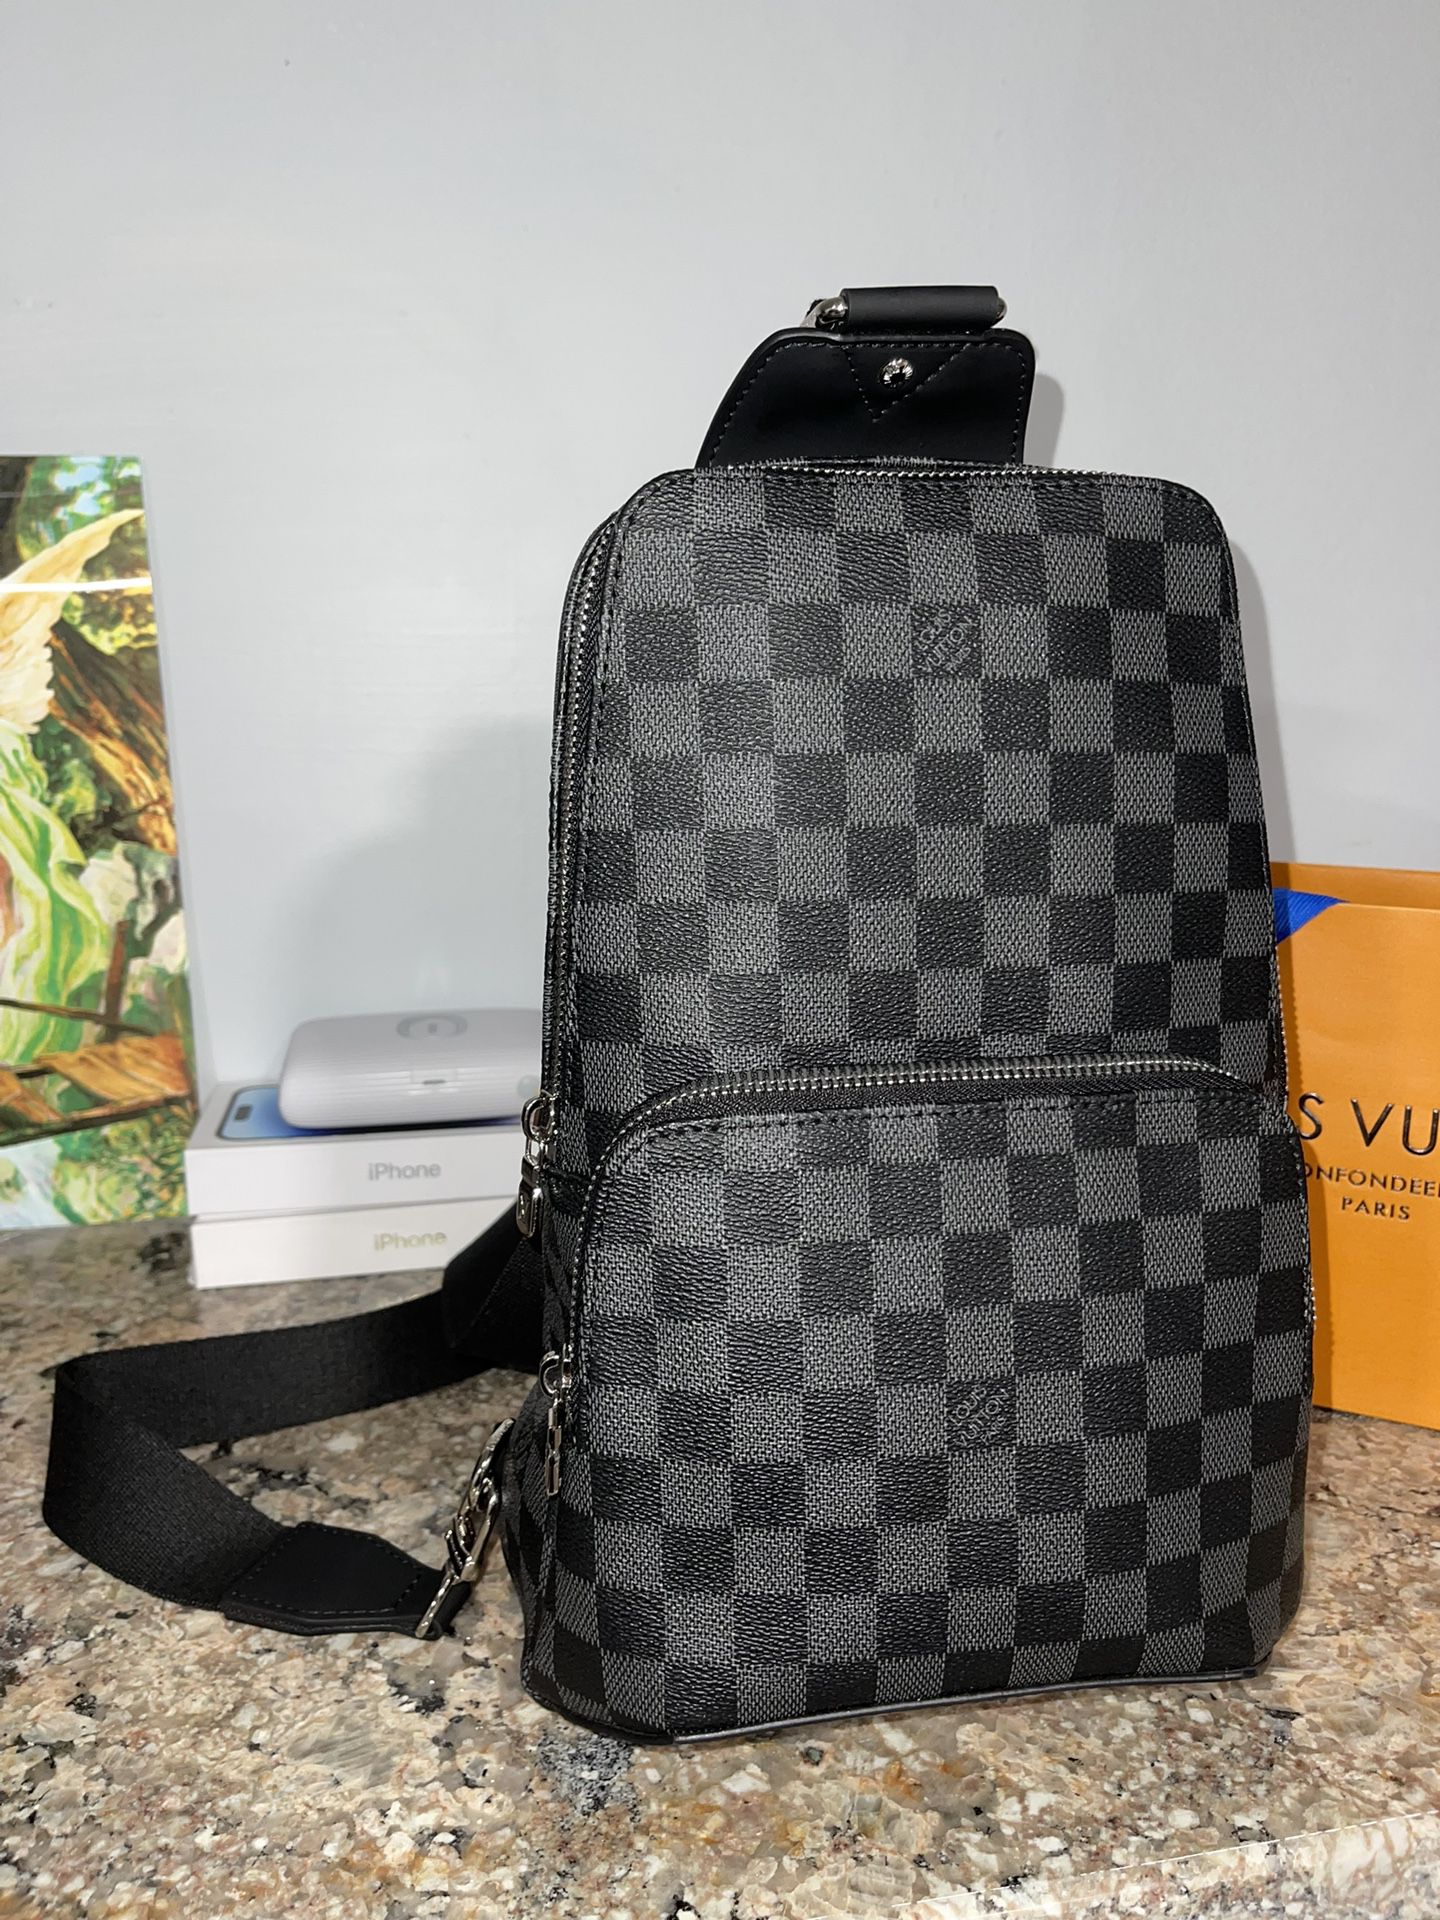 LV messenger Sling Bag for Sale in Culver City, CA - OfferUp